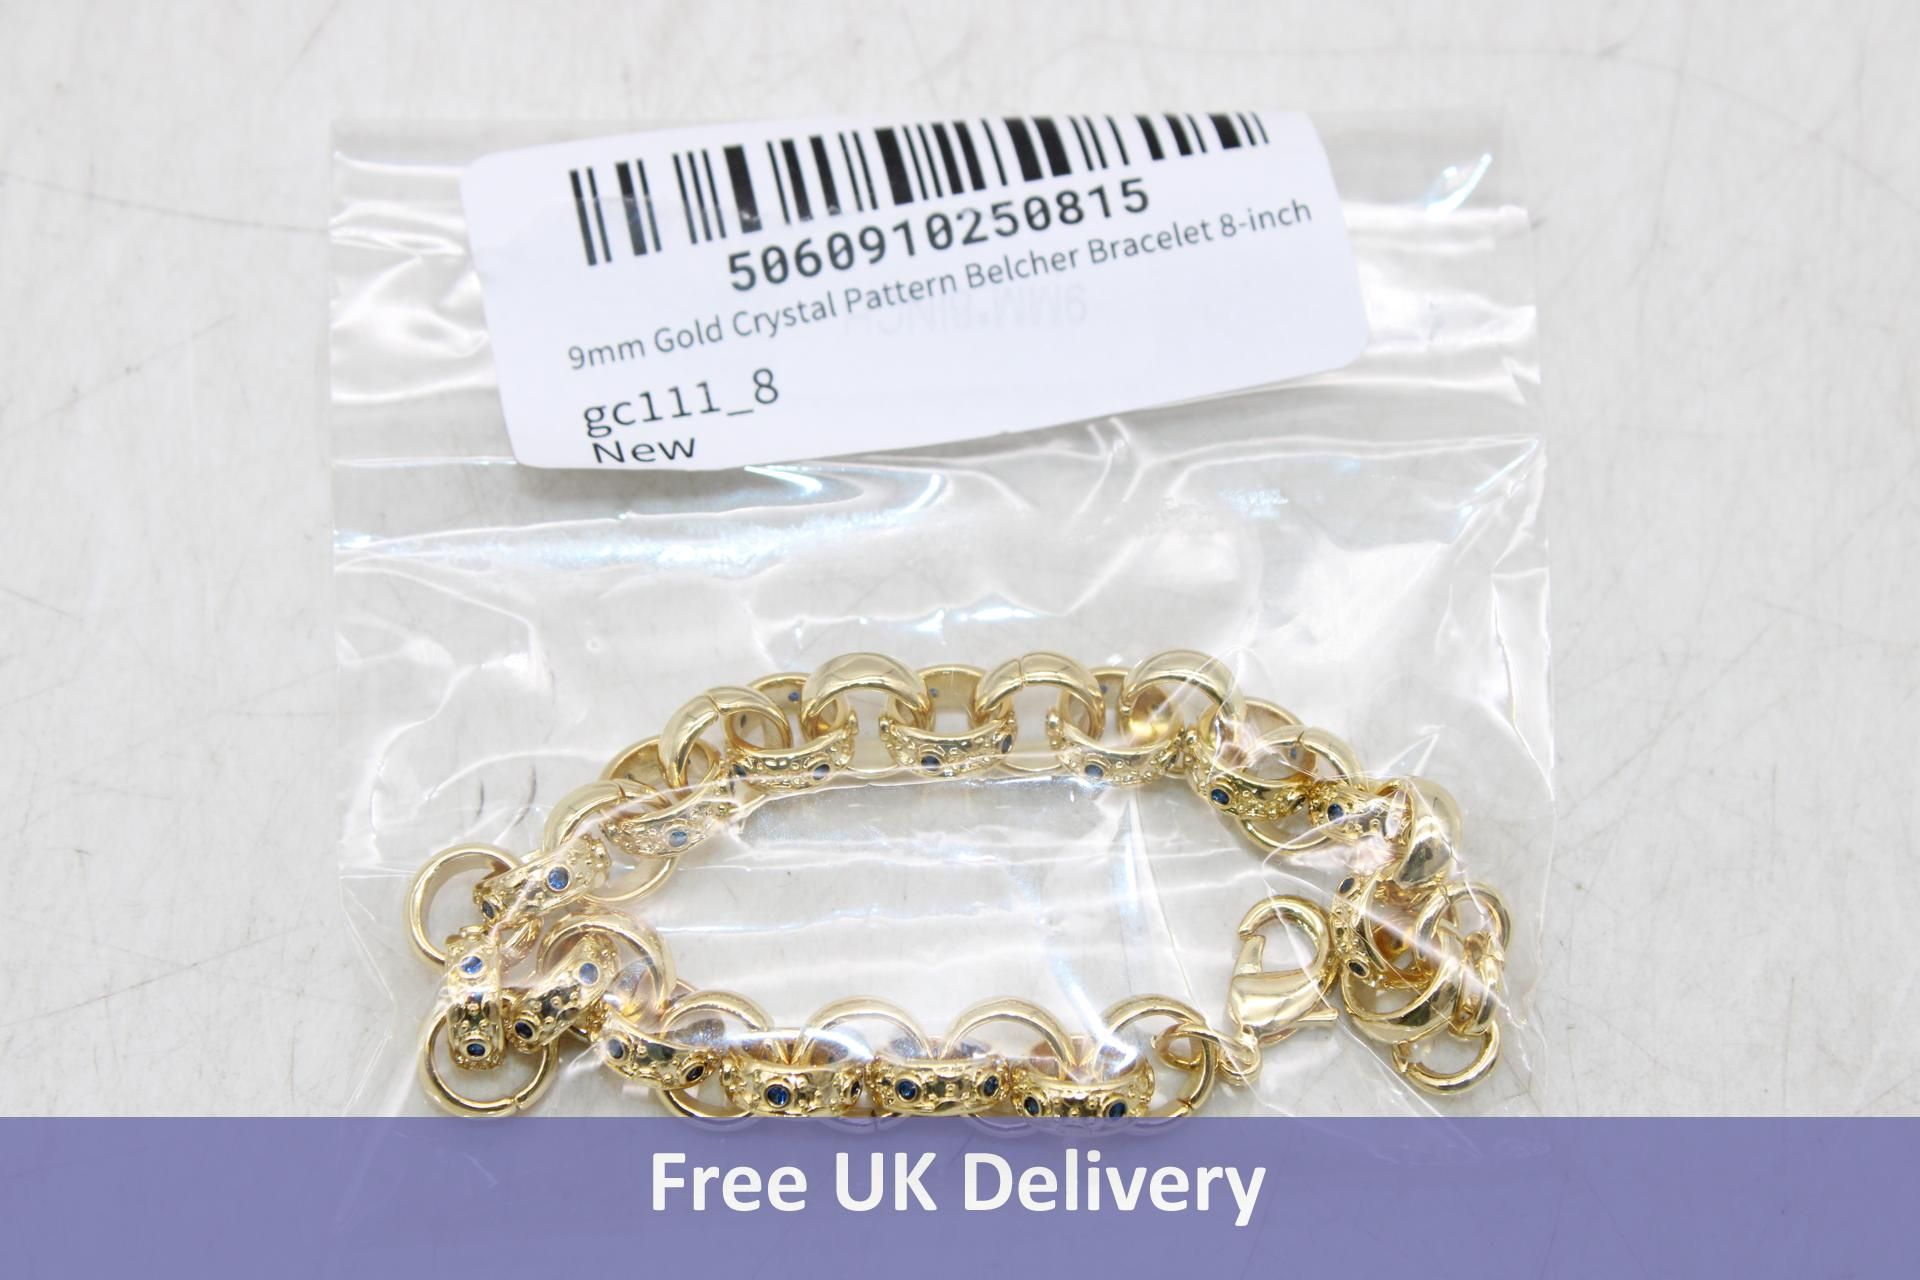 Women's Crystal Pattern Belcher Bracelet 9mm, Gold, GC111-8